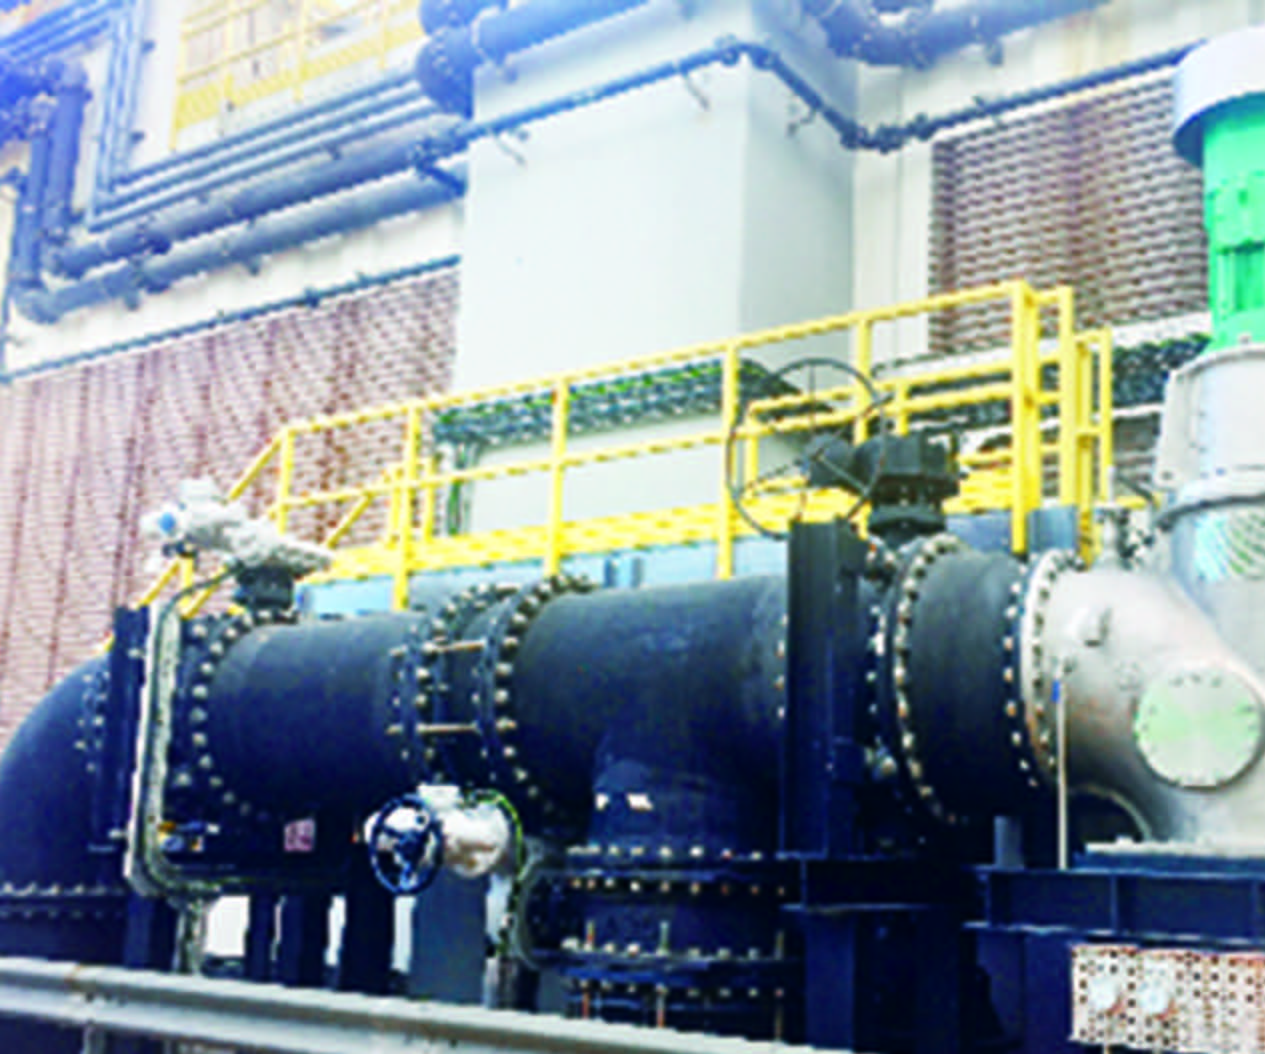 昂船洲污水处理厂的水力涡轮发电系统